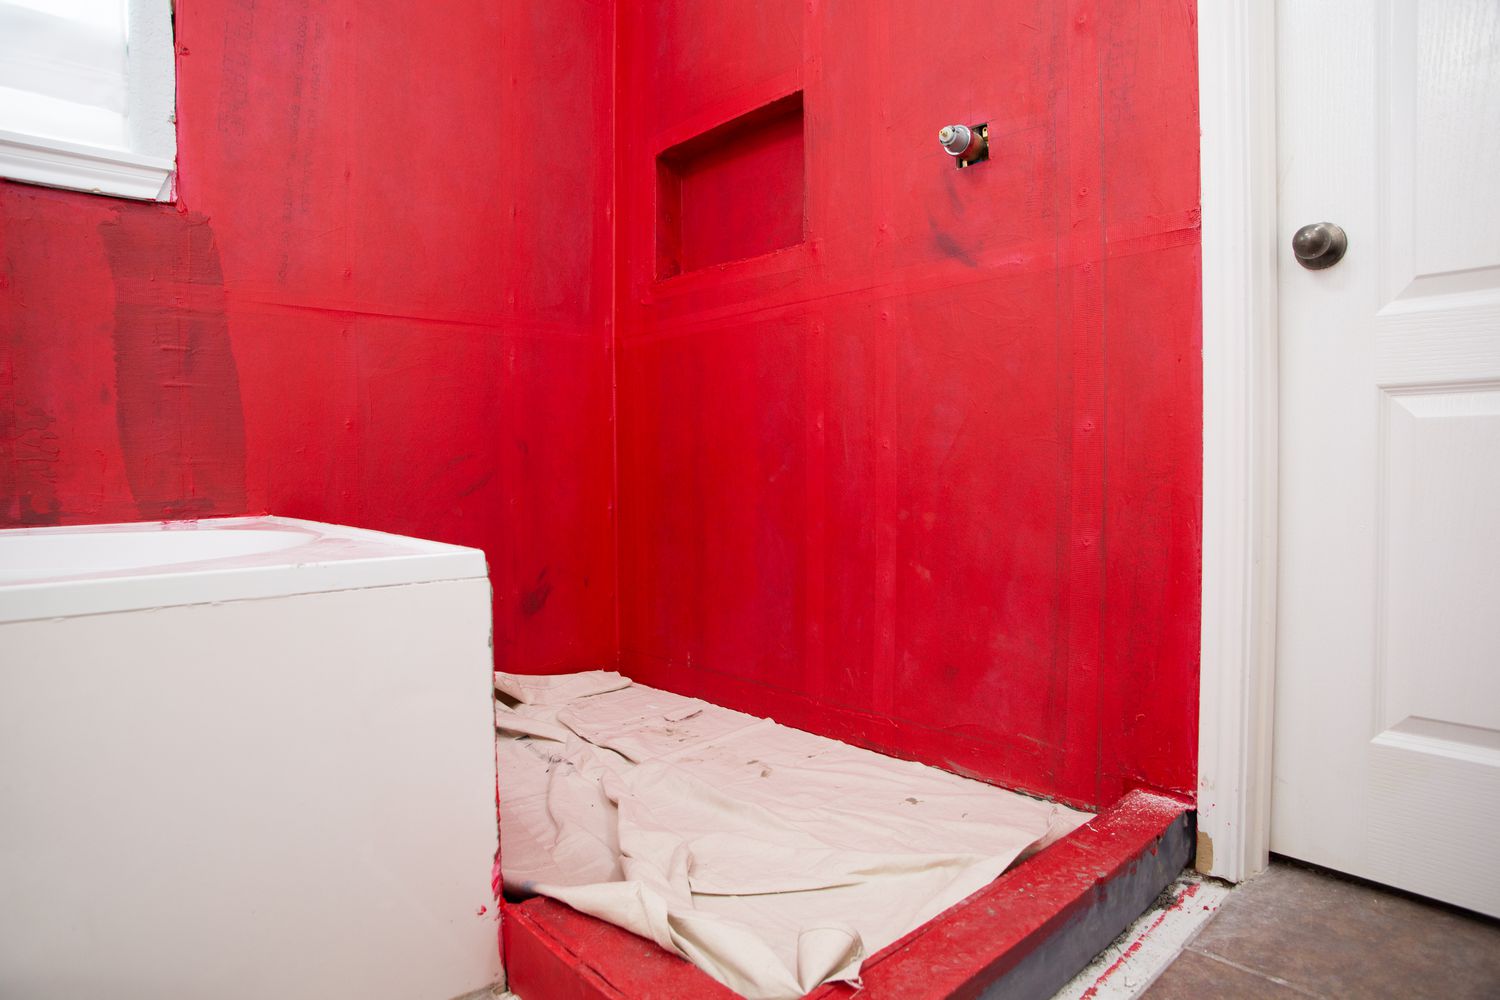 Superfície do piso coberta com tecido branco em um banheiro com paredes vermelhas antes de instalar o revestimento cerâmico